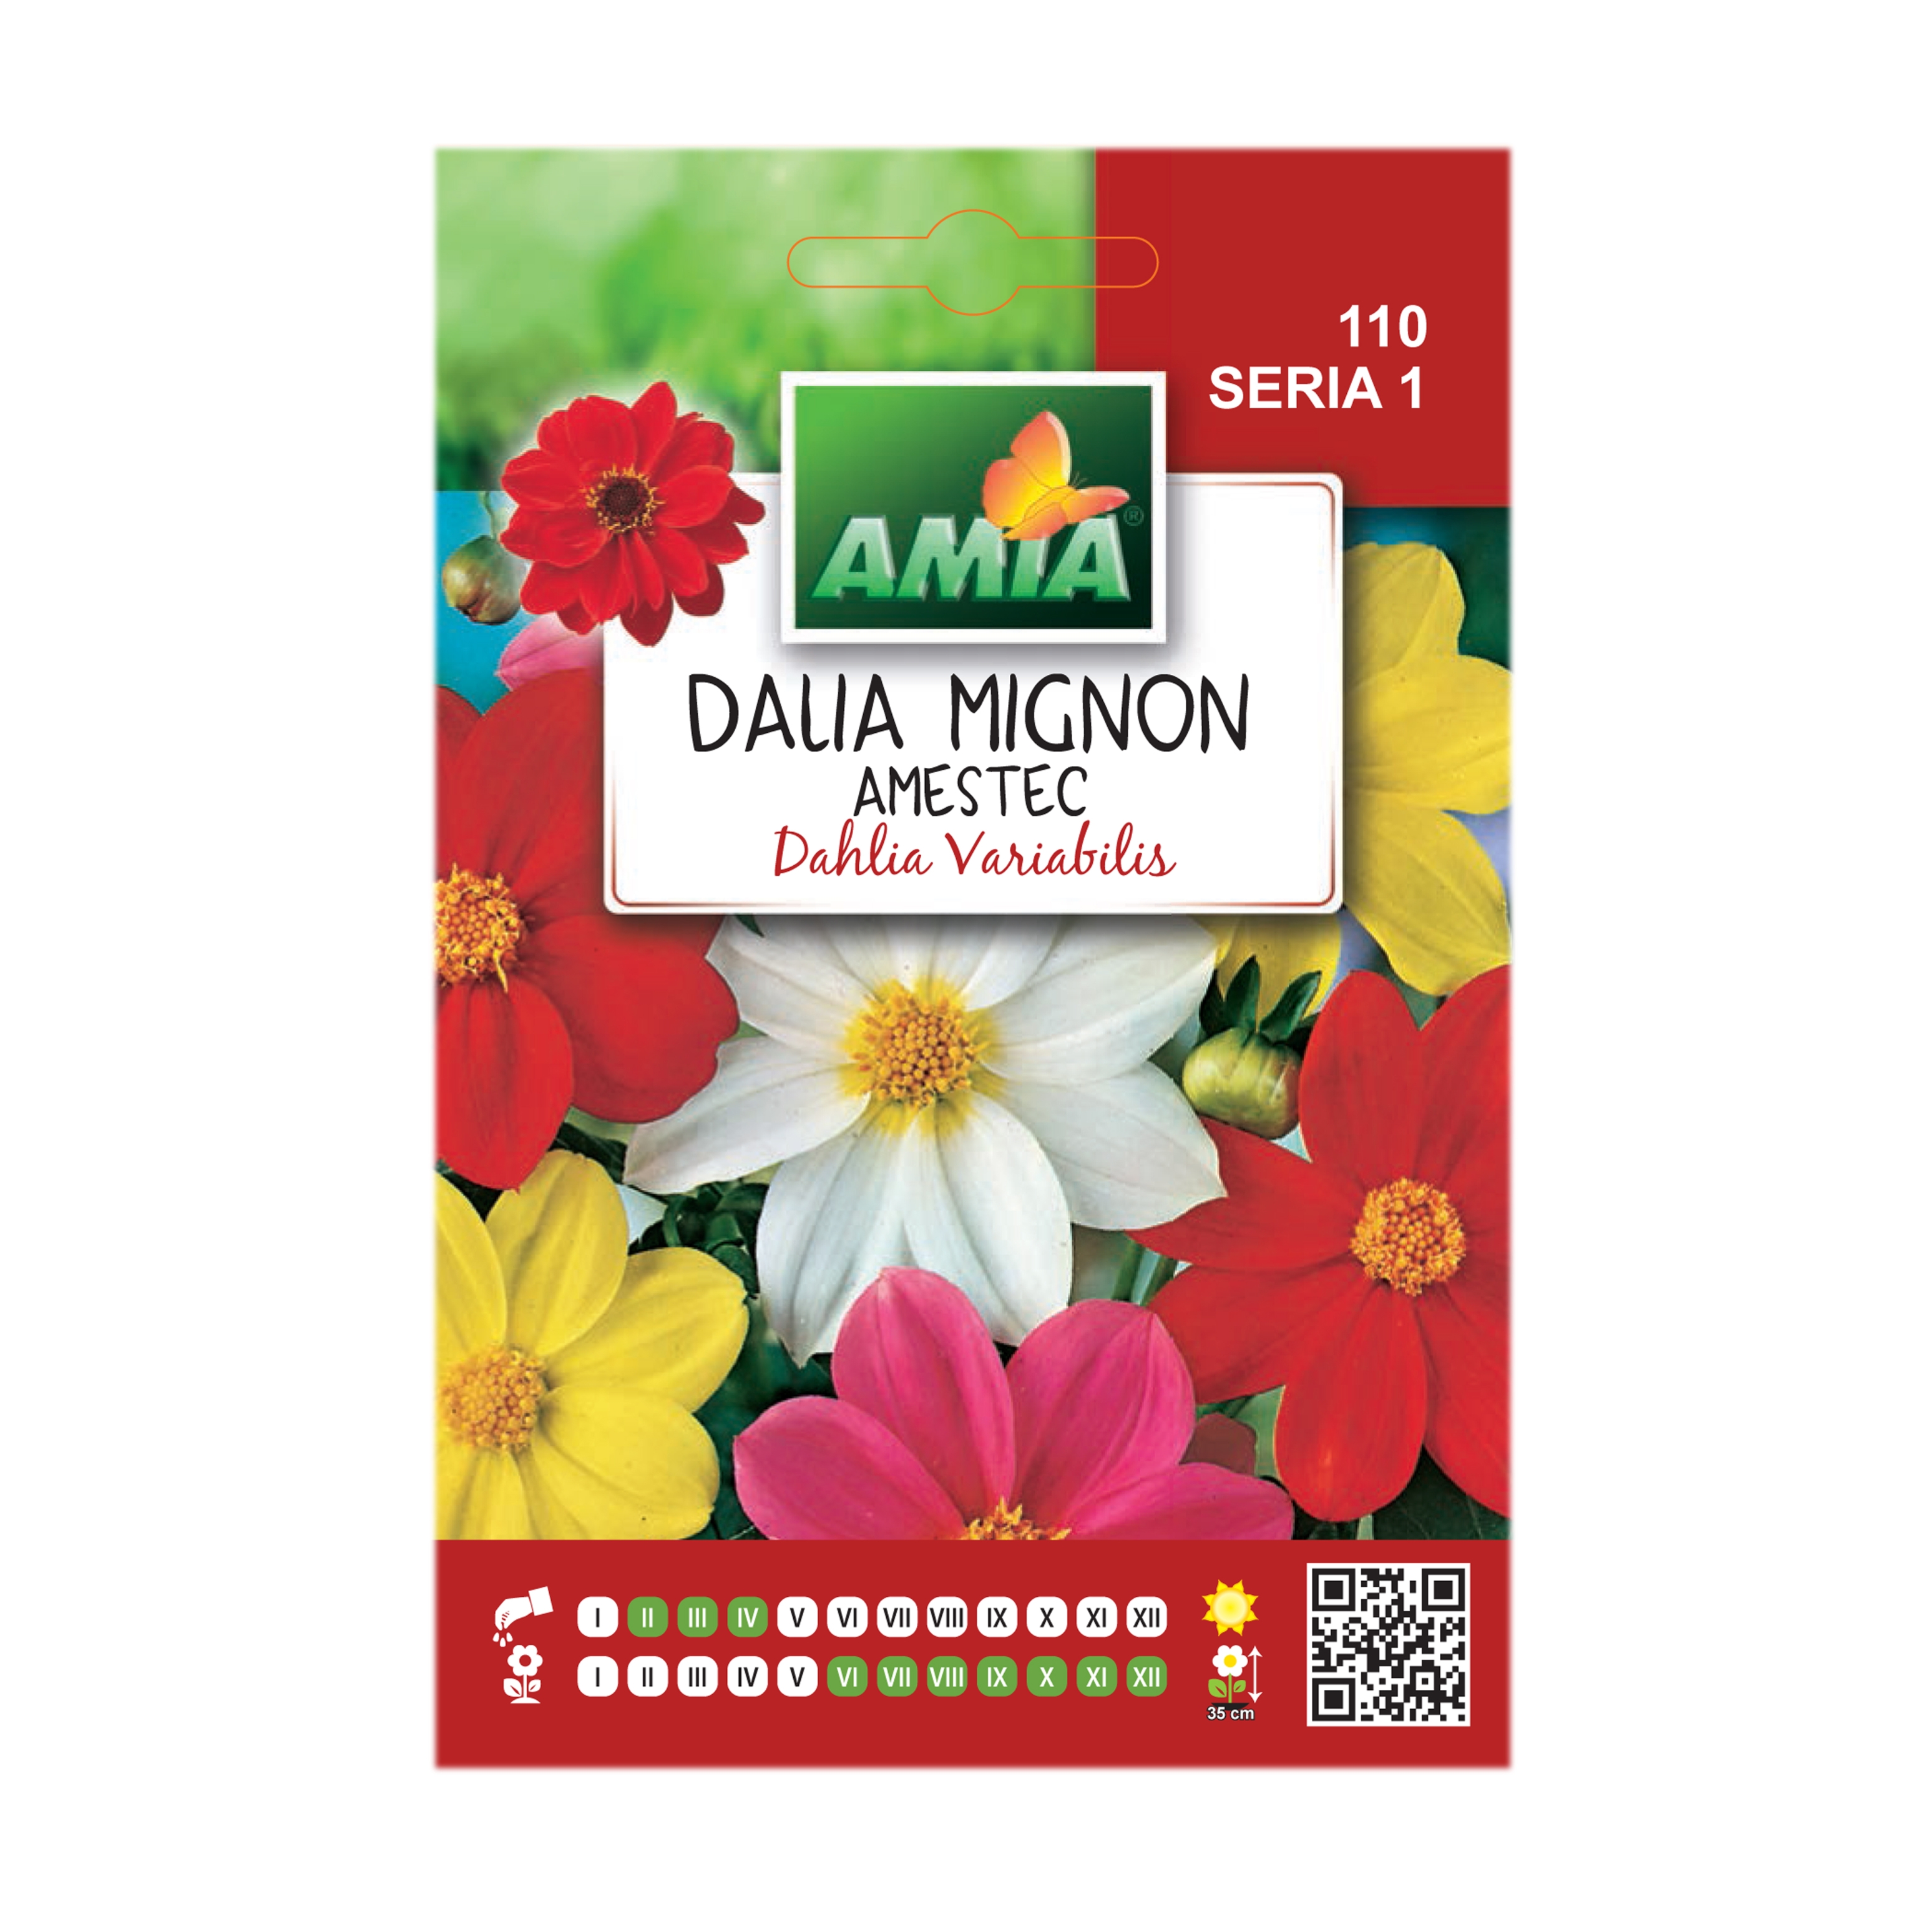 Seminte flori Amia - Dalia mignon, mix culori